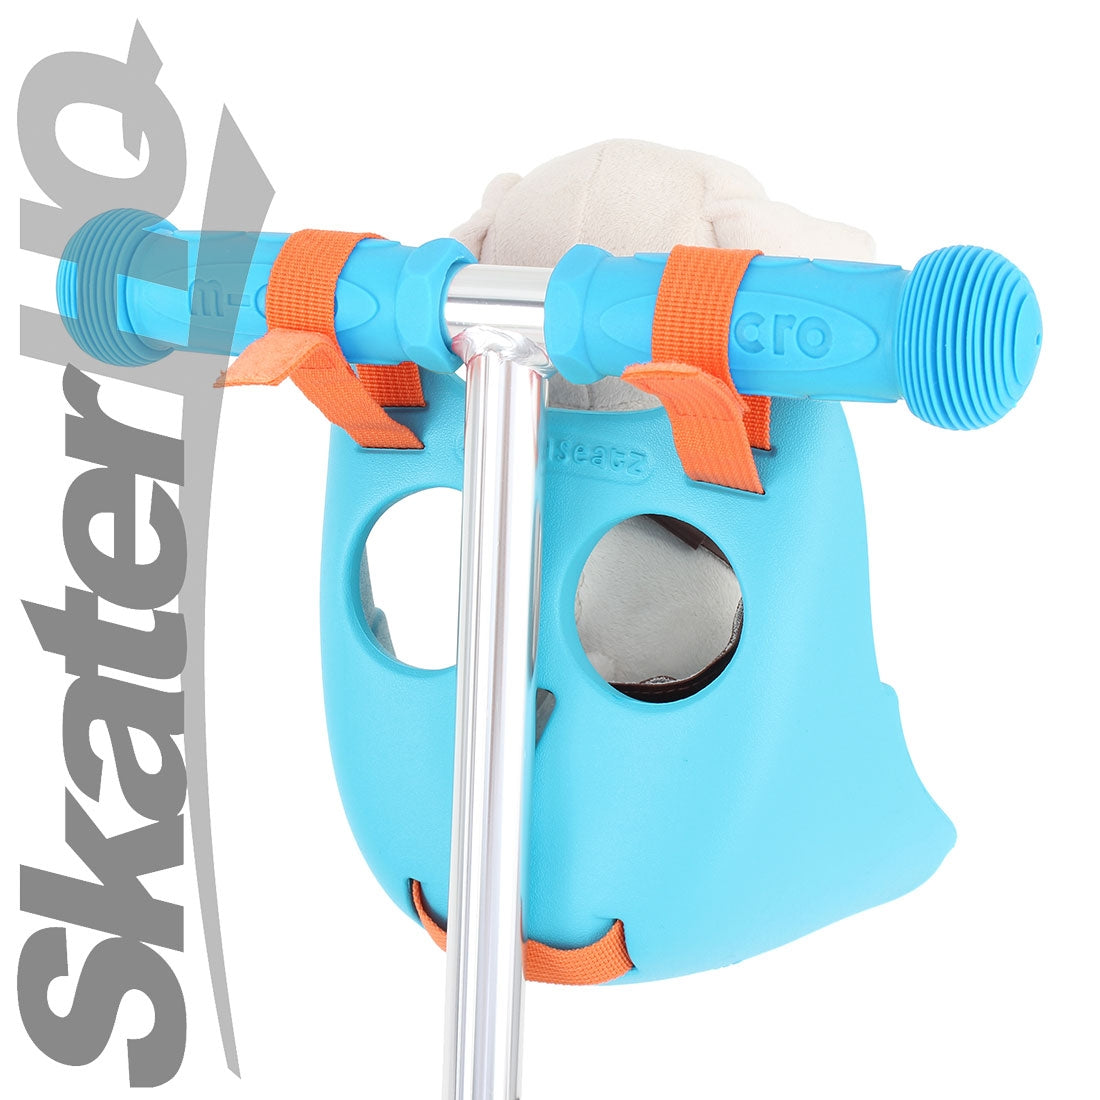 Scootaseatz Owl Seat - Aqua Scooter Accessories